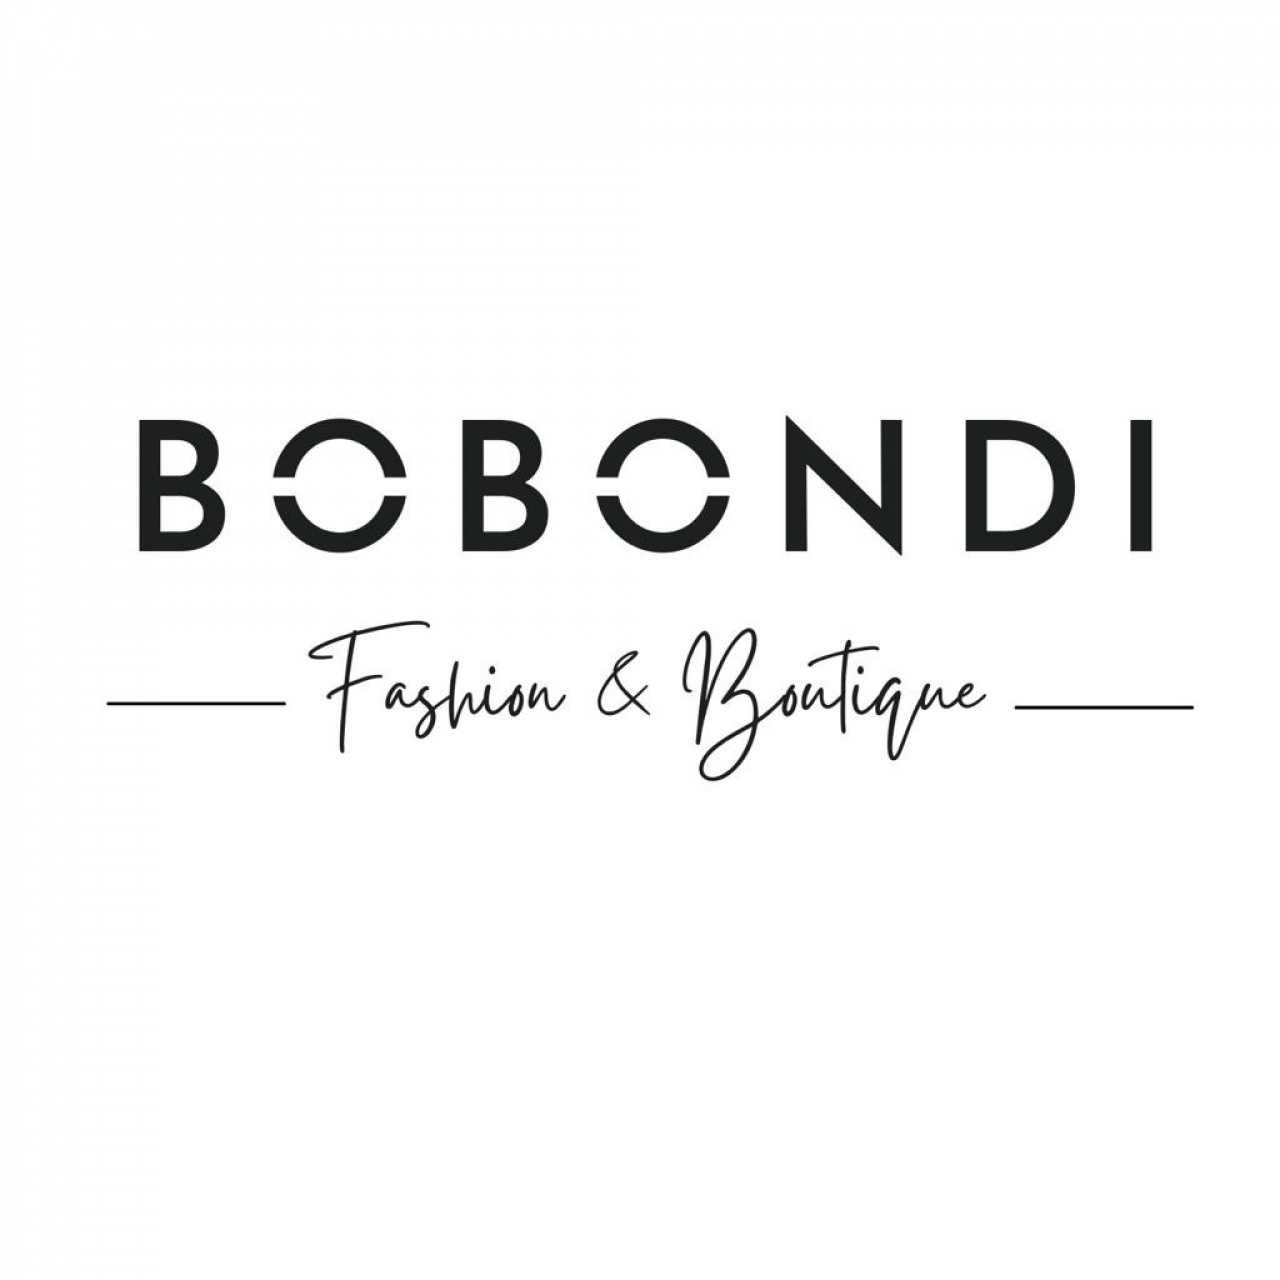 BOBONDI - fashion & boutique